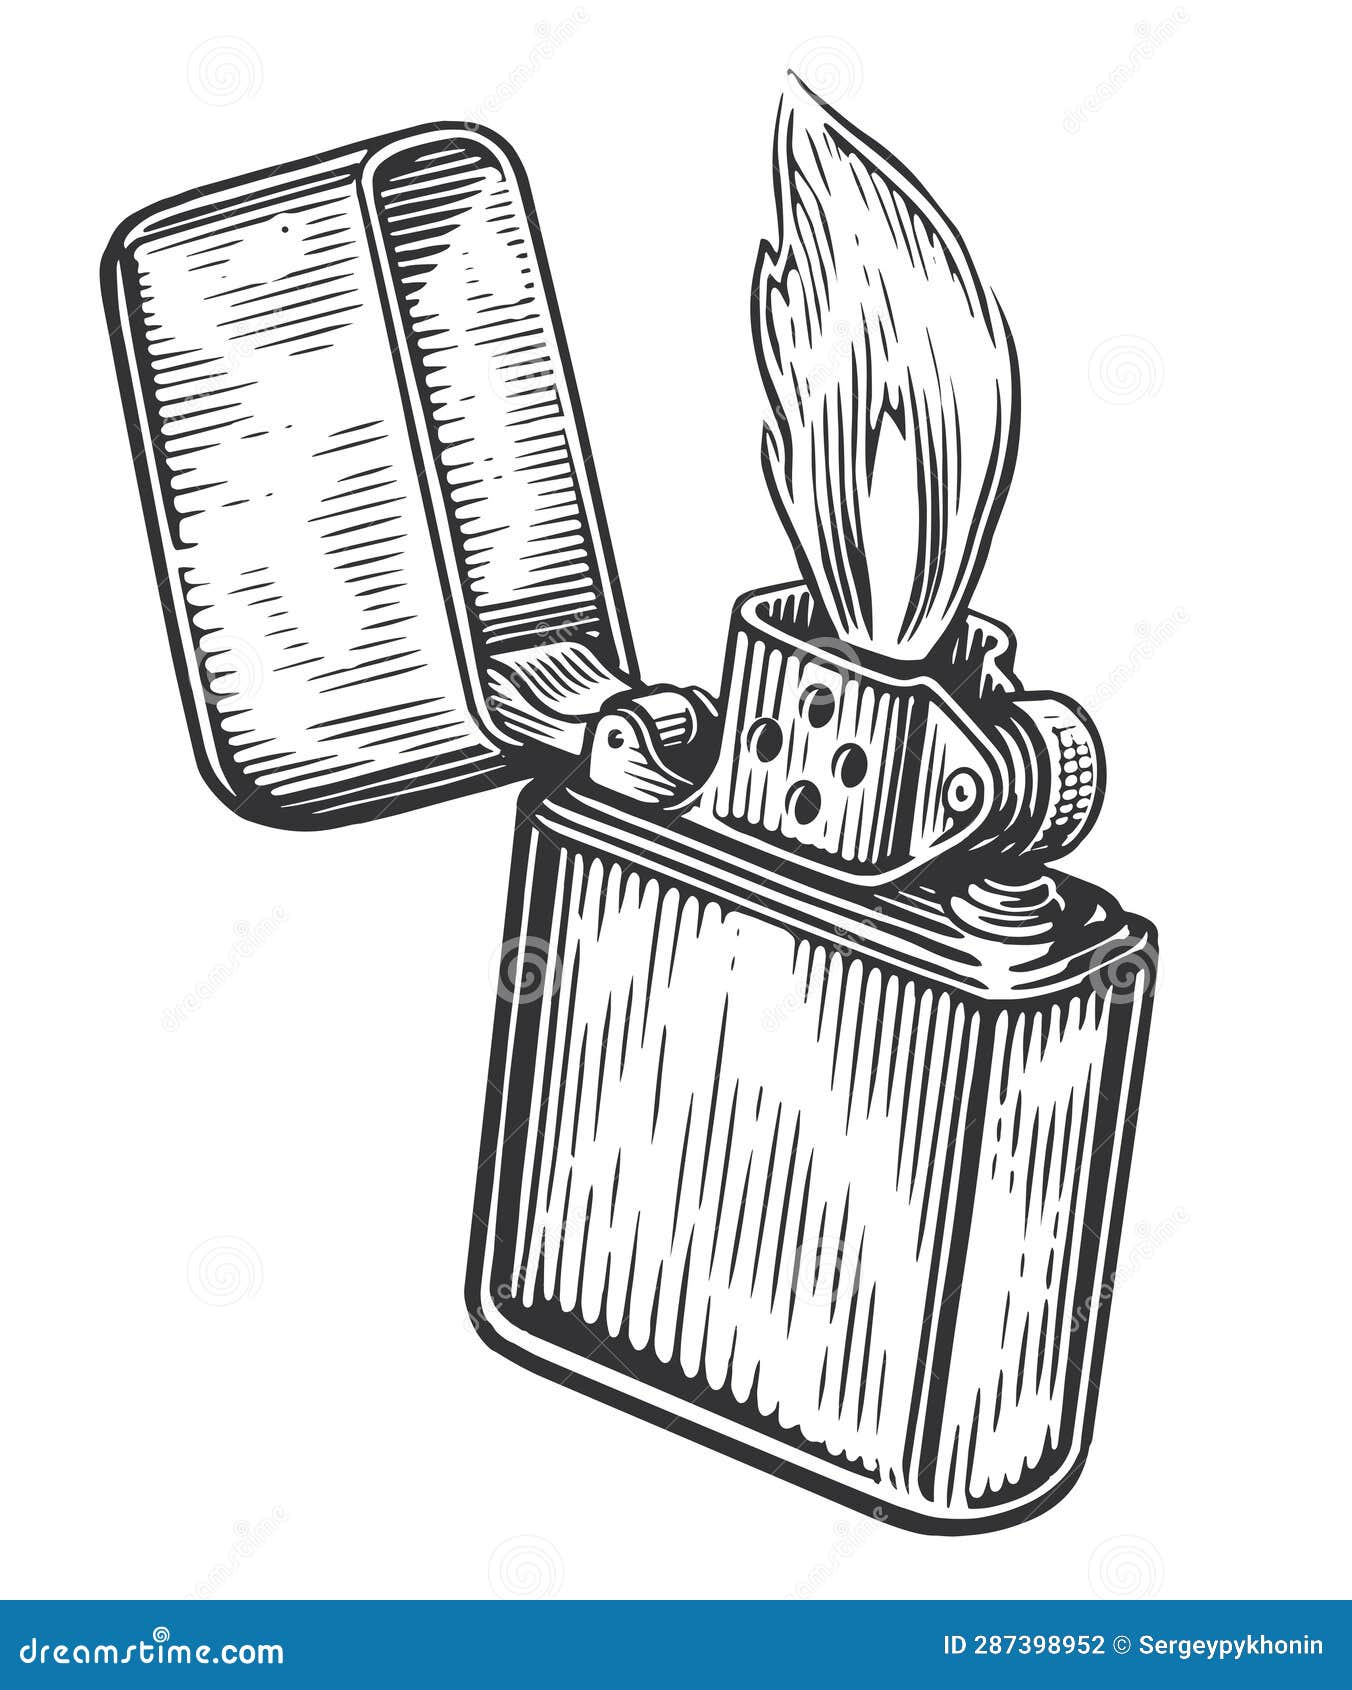 Fire Flame and Lighter Burns with the Lid Open. Burning Cigarette Lighter.  Sketch Vintage Vector Illustration Stock Vector - Illustration of metal,  burn: 287398952